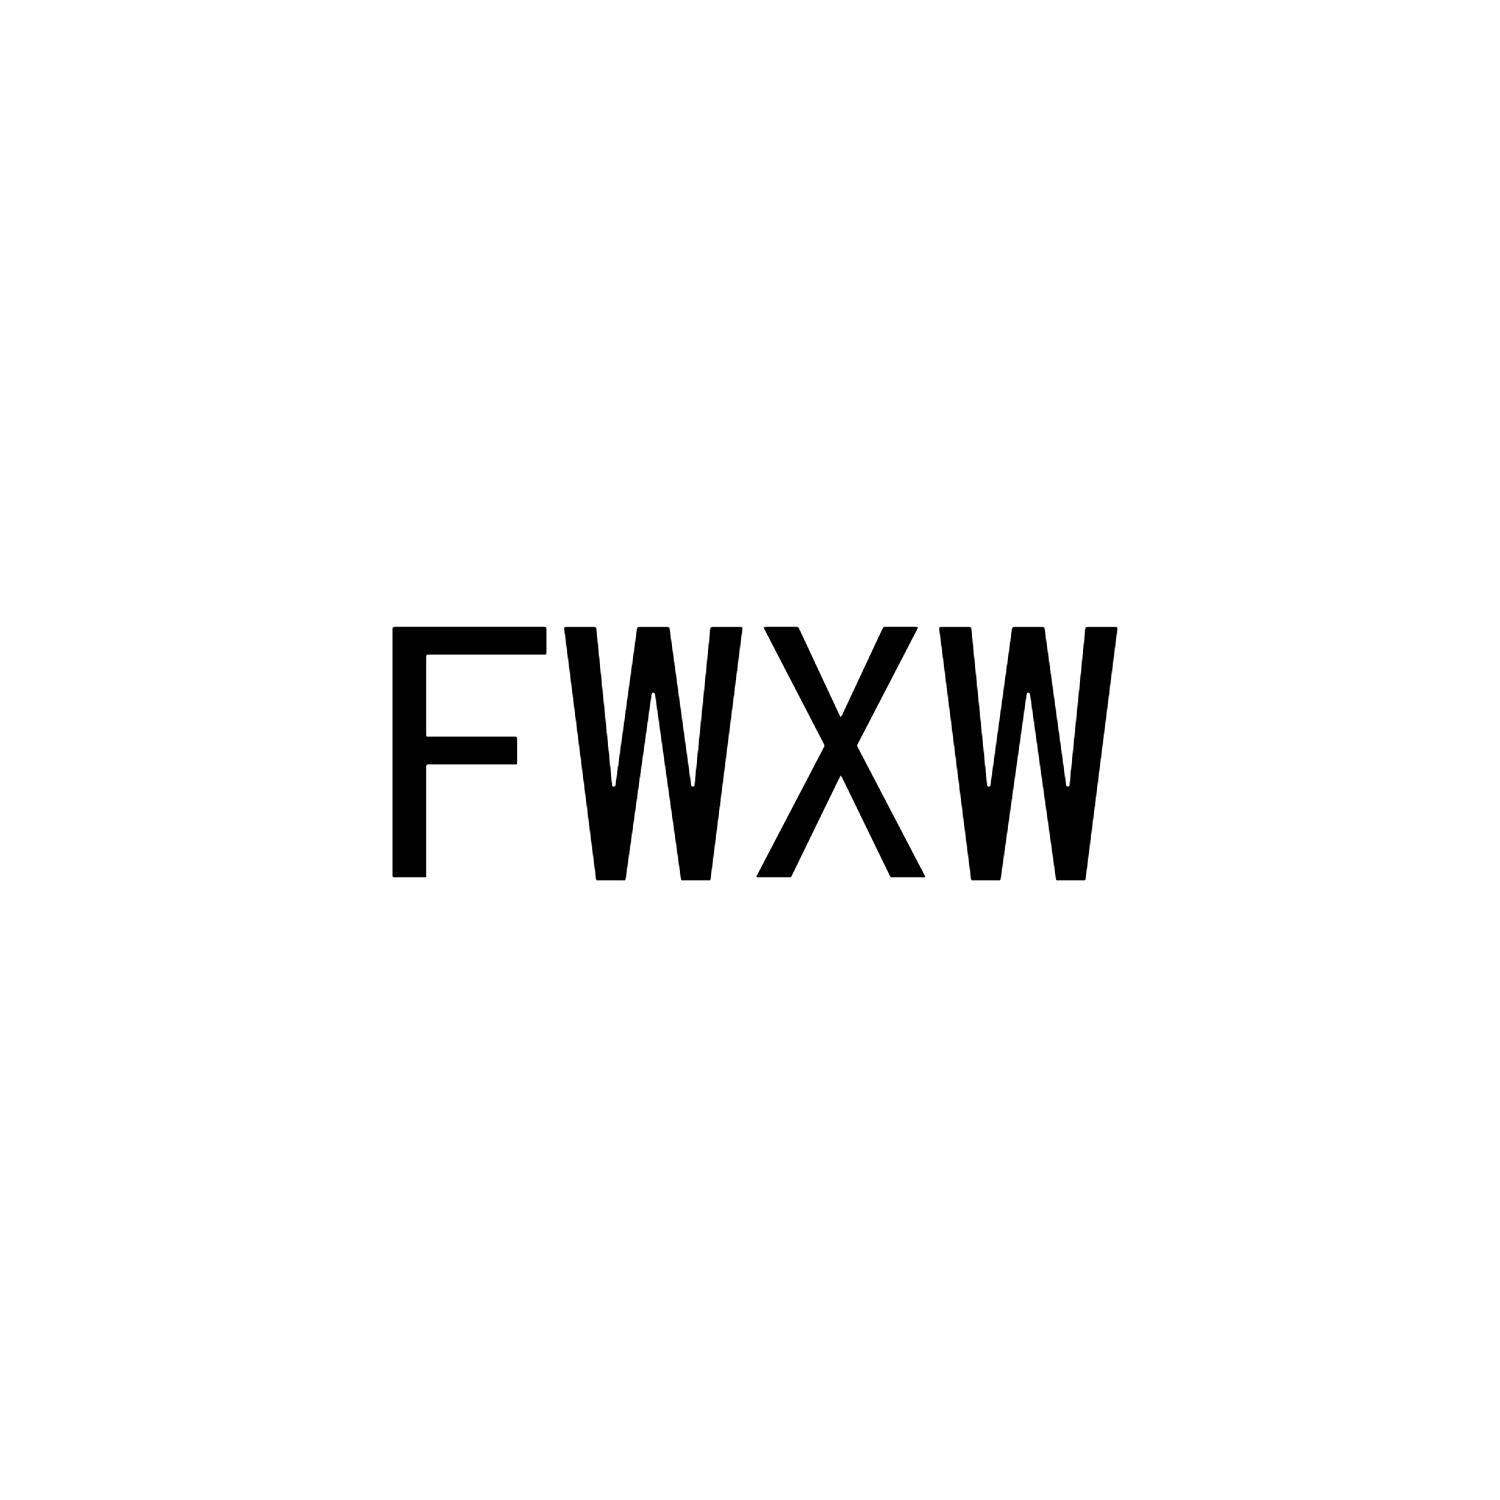 FWXW